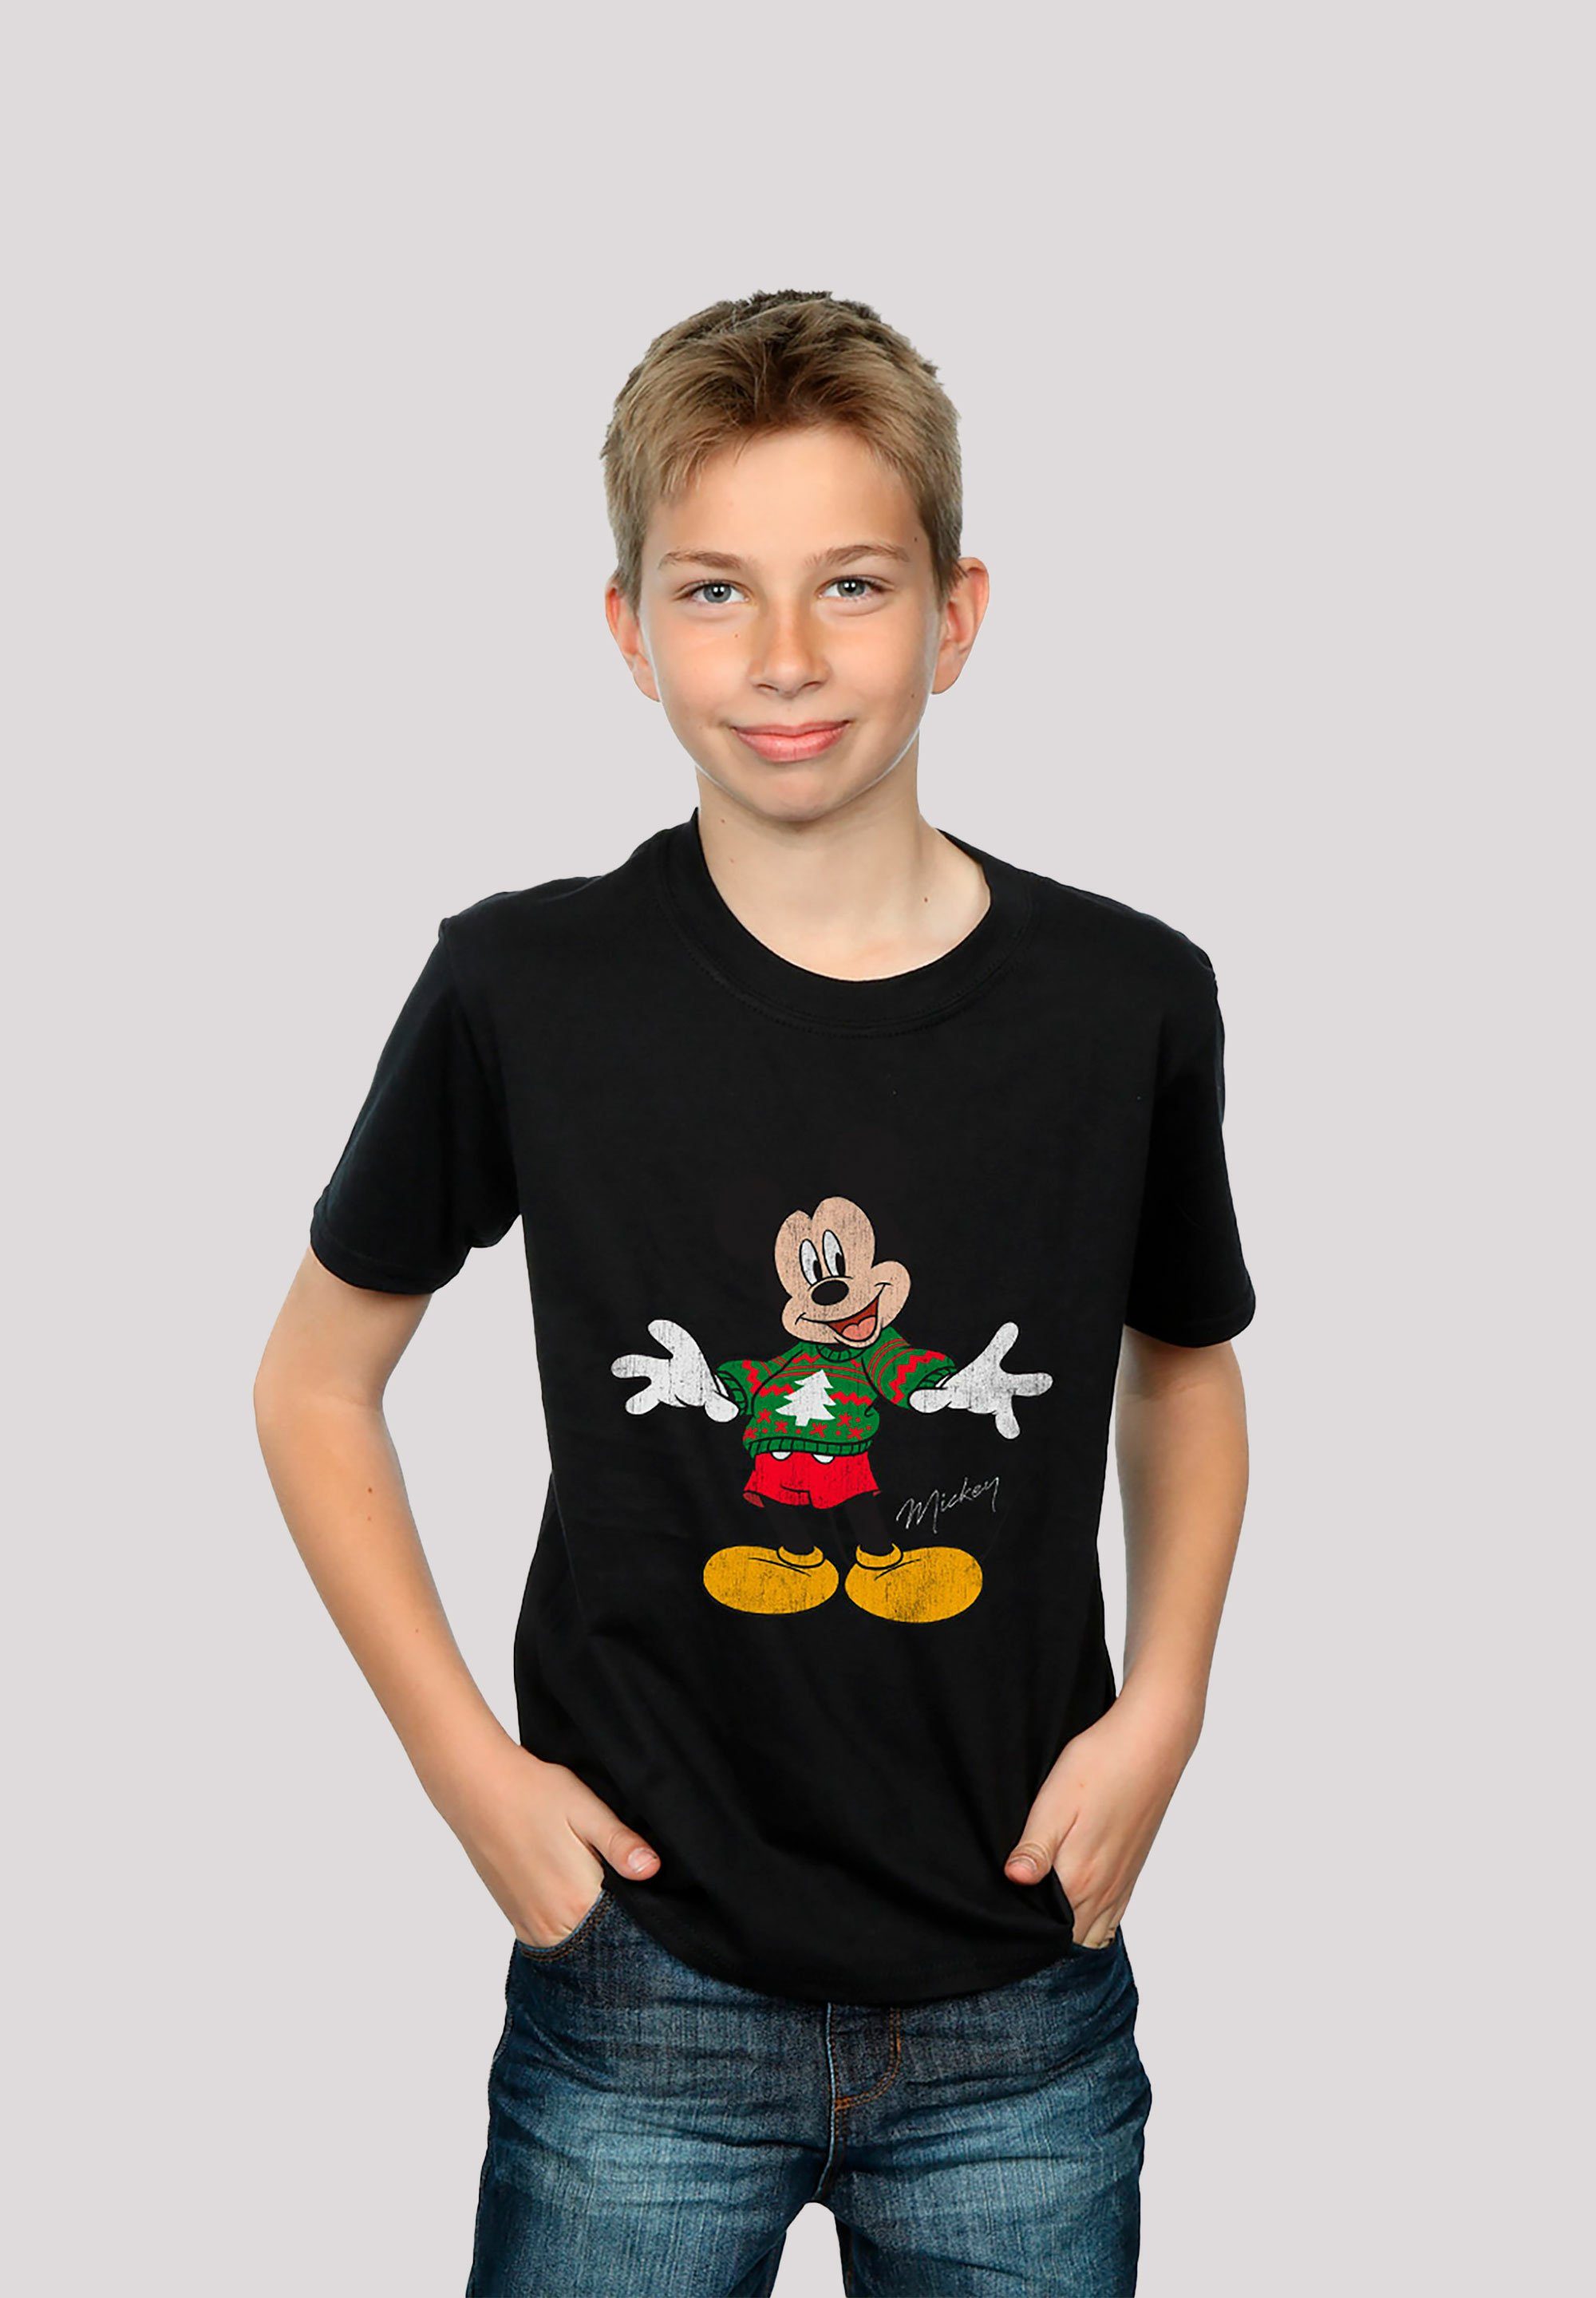 Print Weihnachten Disney Maus F4NT4STIC schwarz T-Shirt Micky